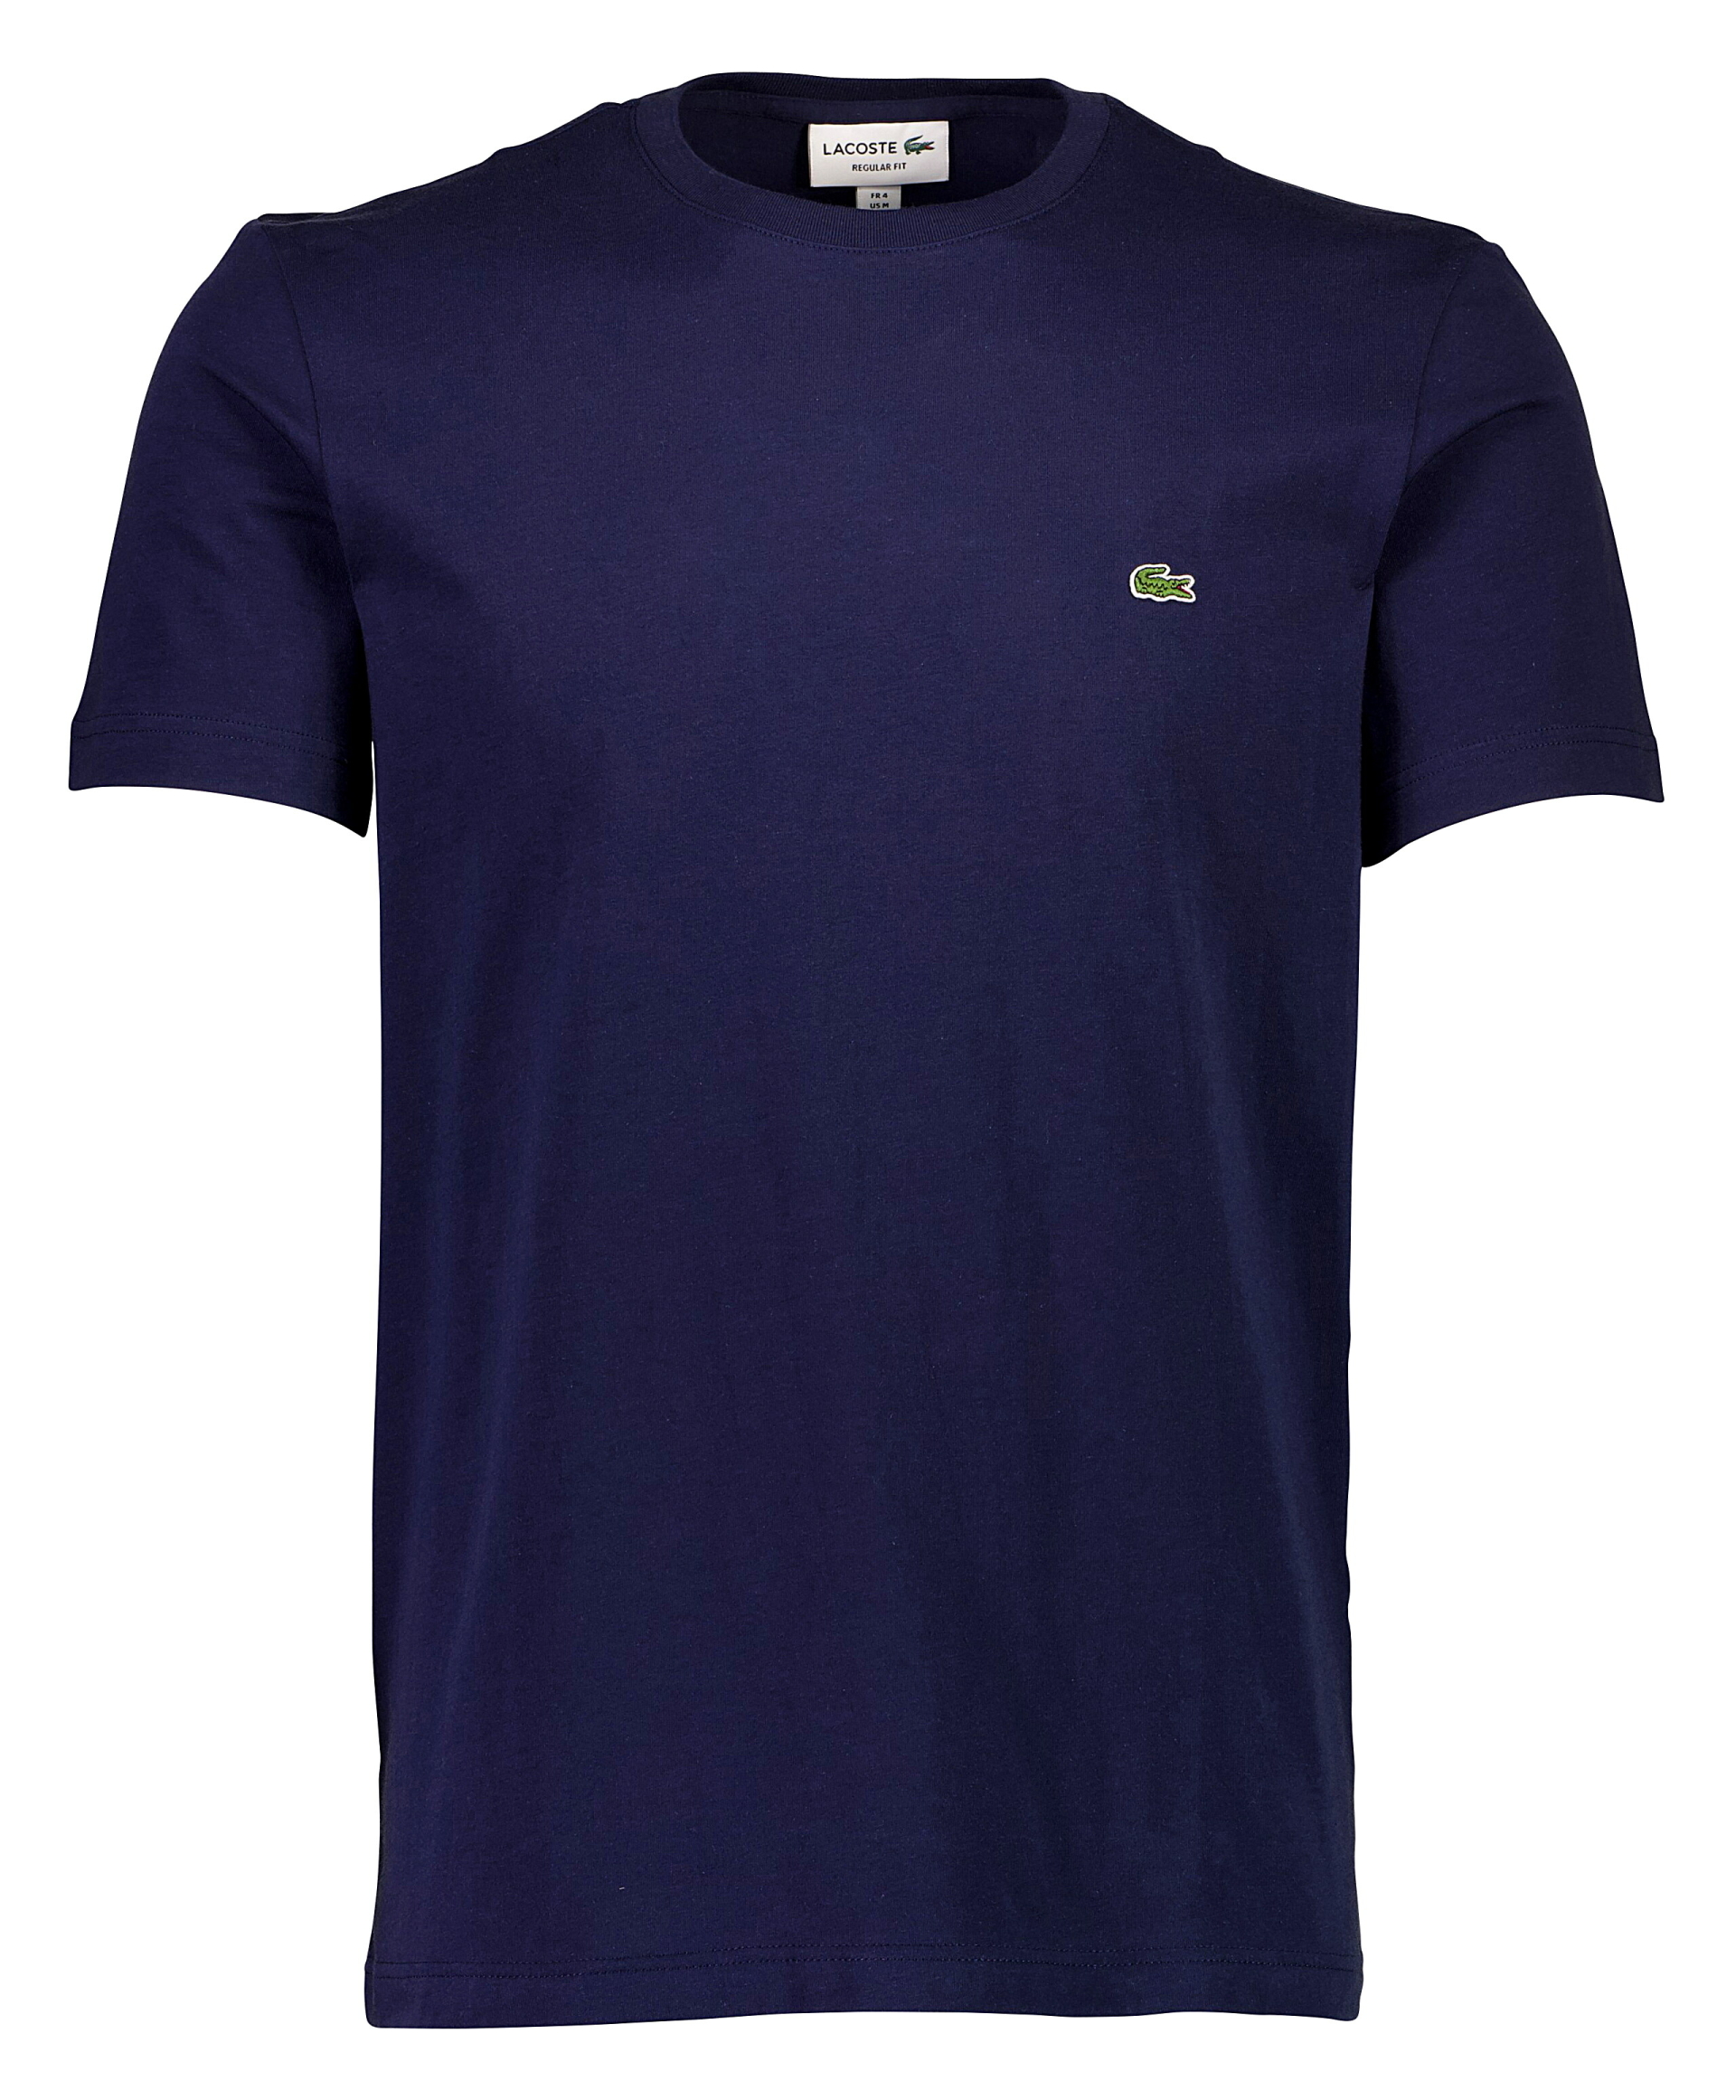 Lacoste T-shirt blå / 166 marine